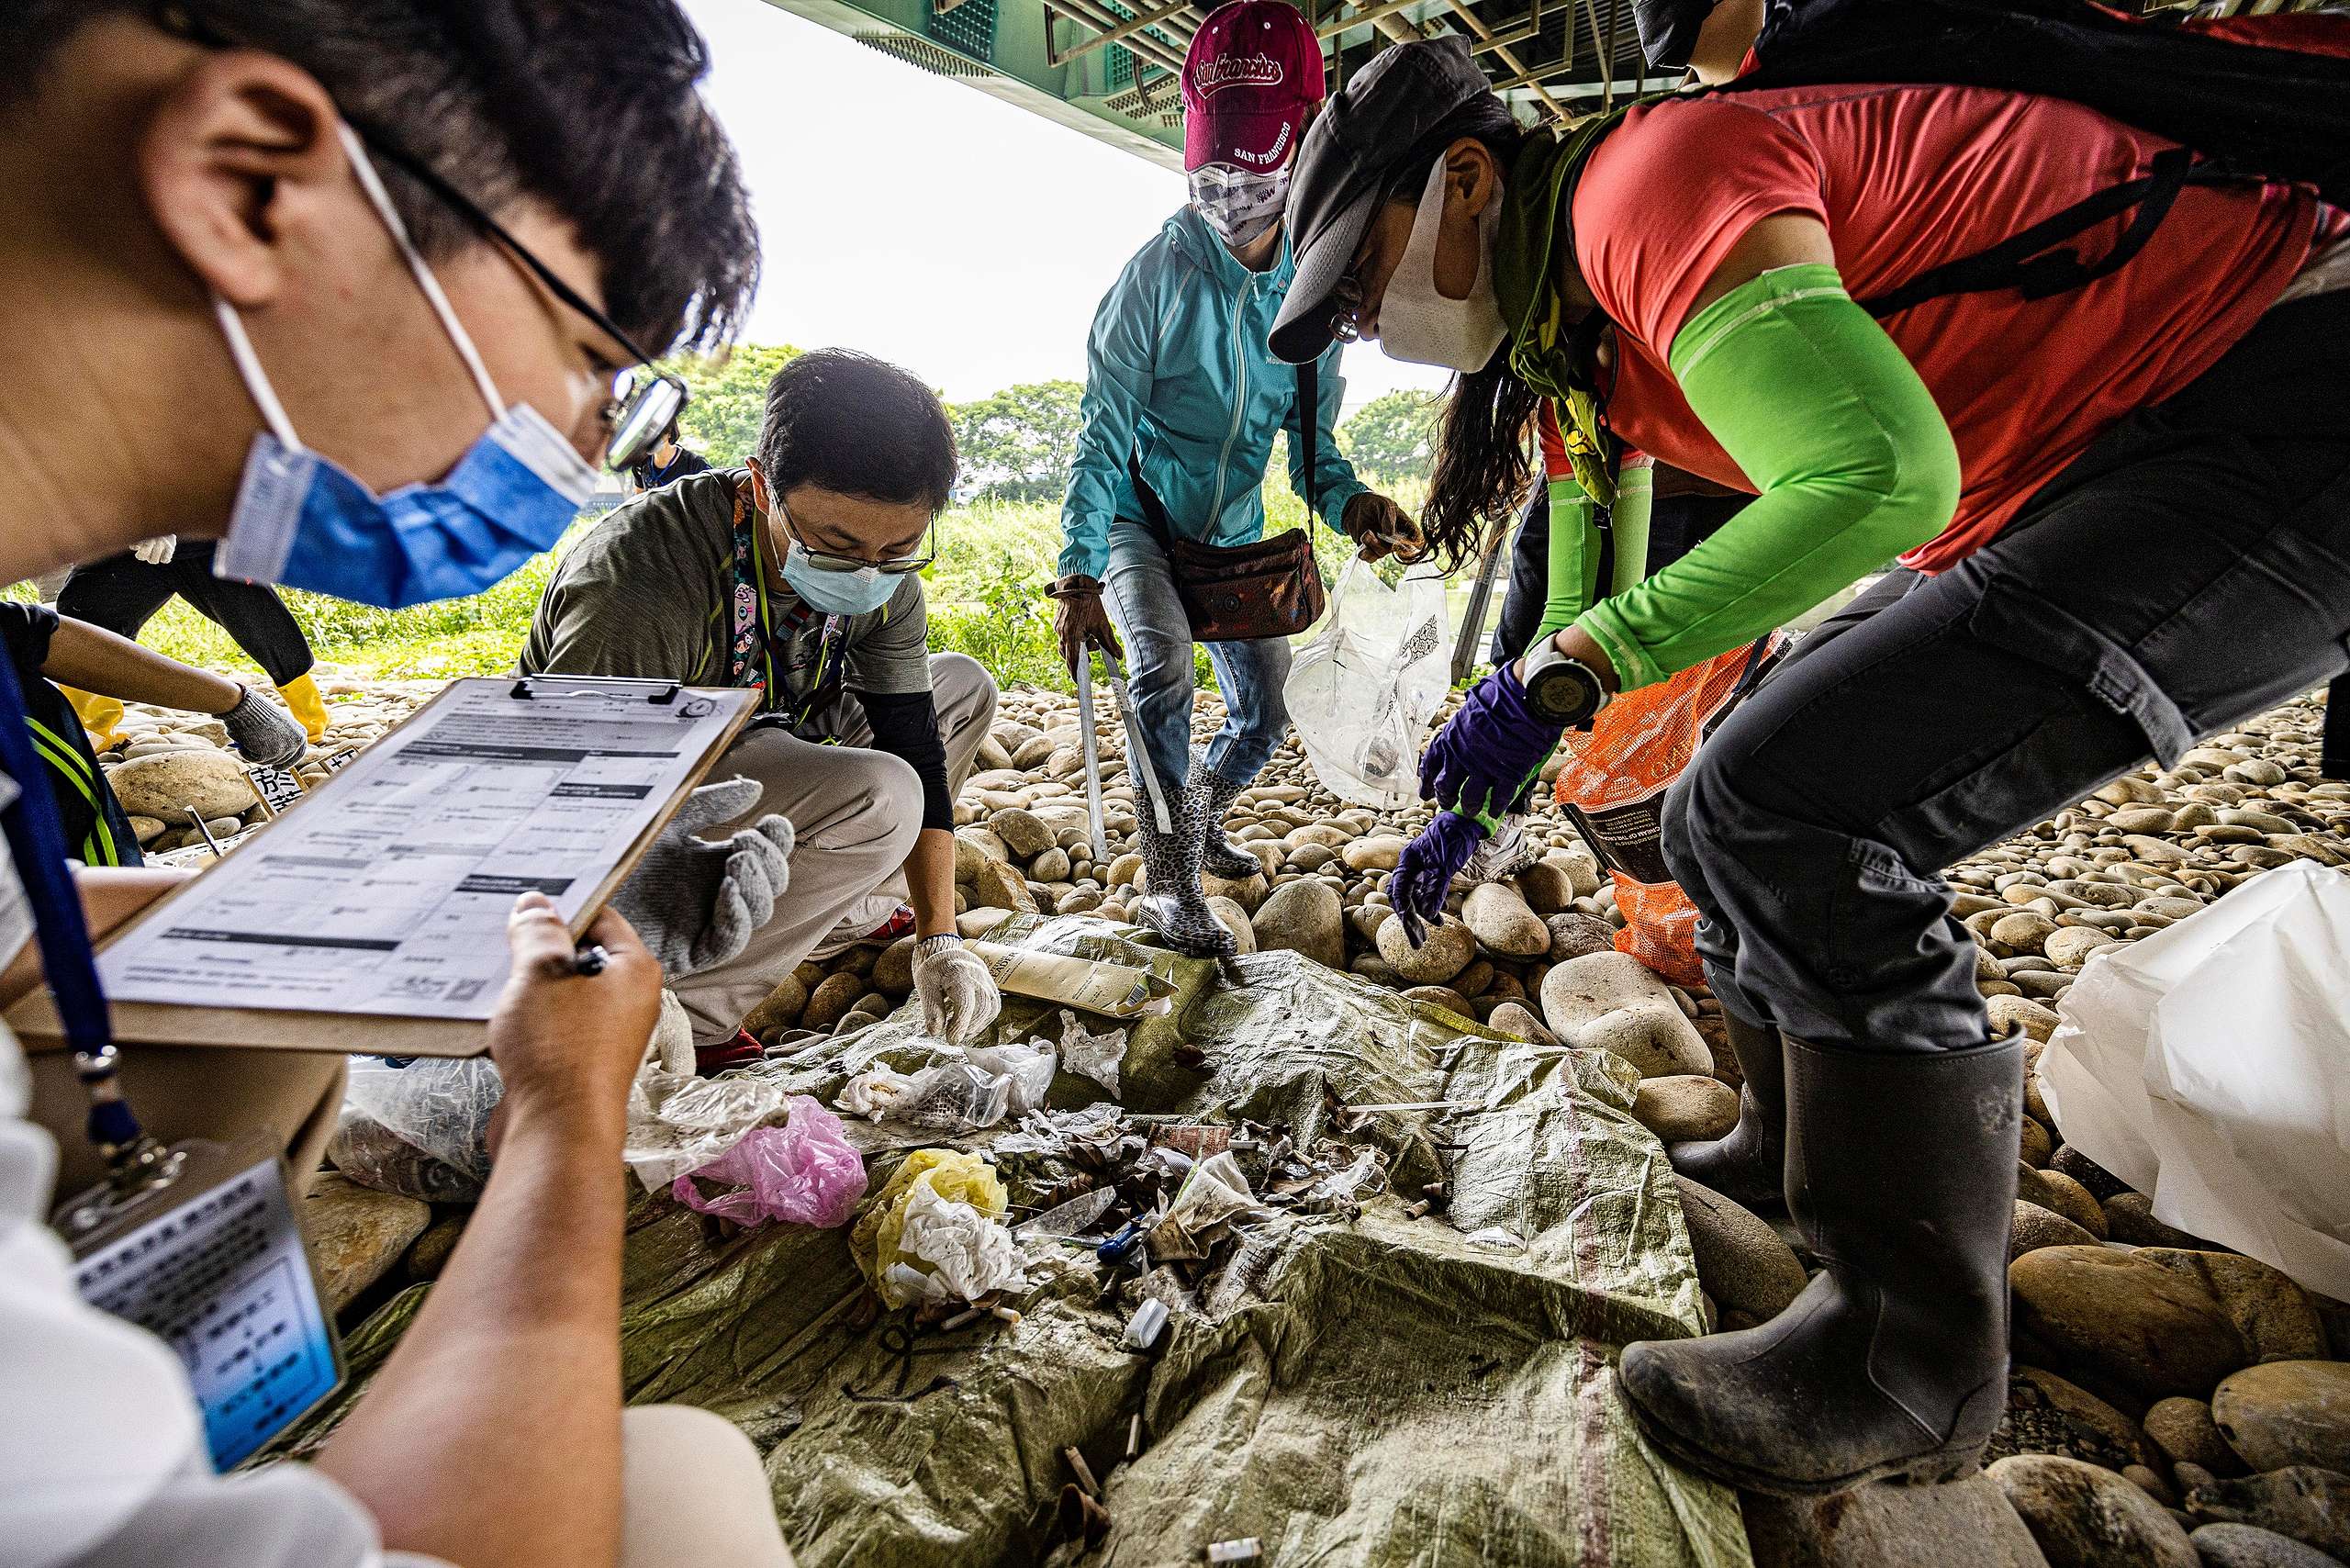 根據綠色和平志工的統計，當天在臺中筏子溪共清除64公斤垃圾，其中包括500根煙蒂、大量食品包裝袋、外帶盒。